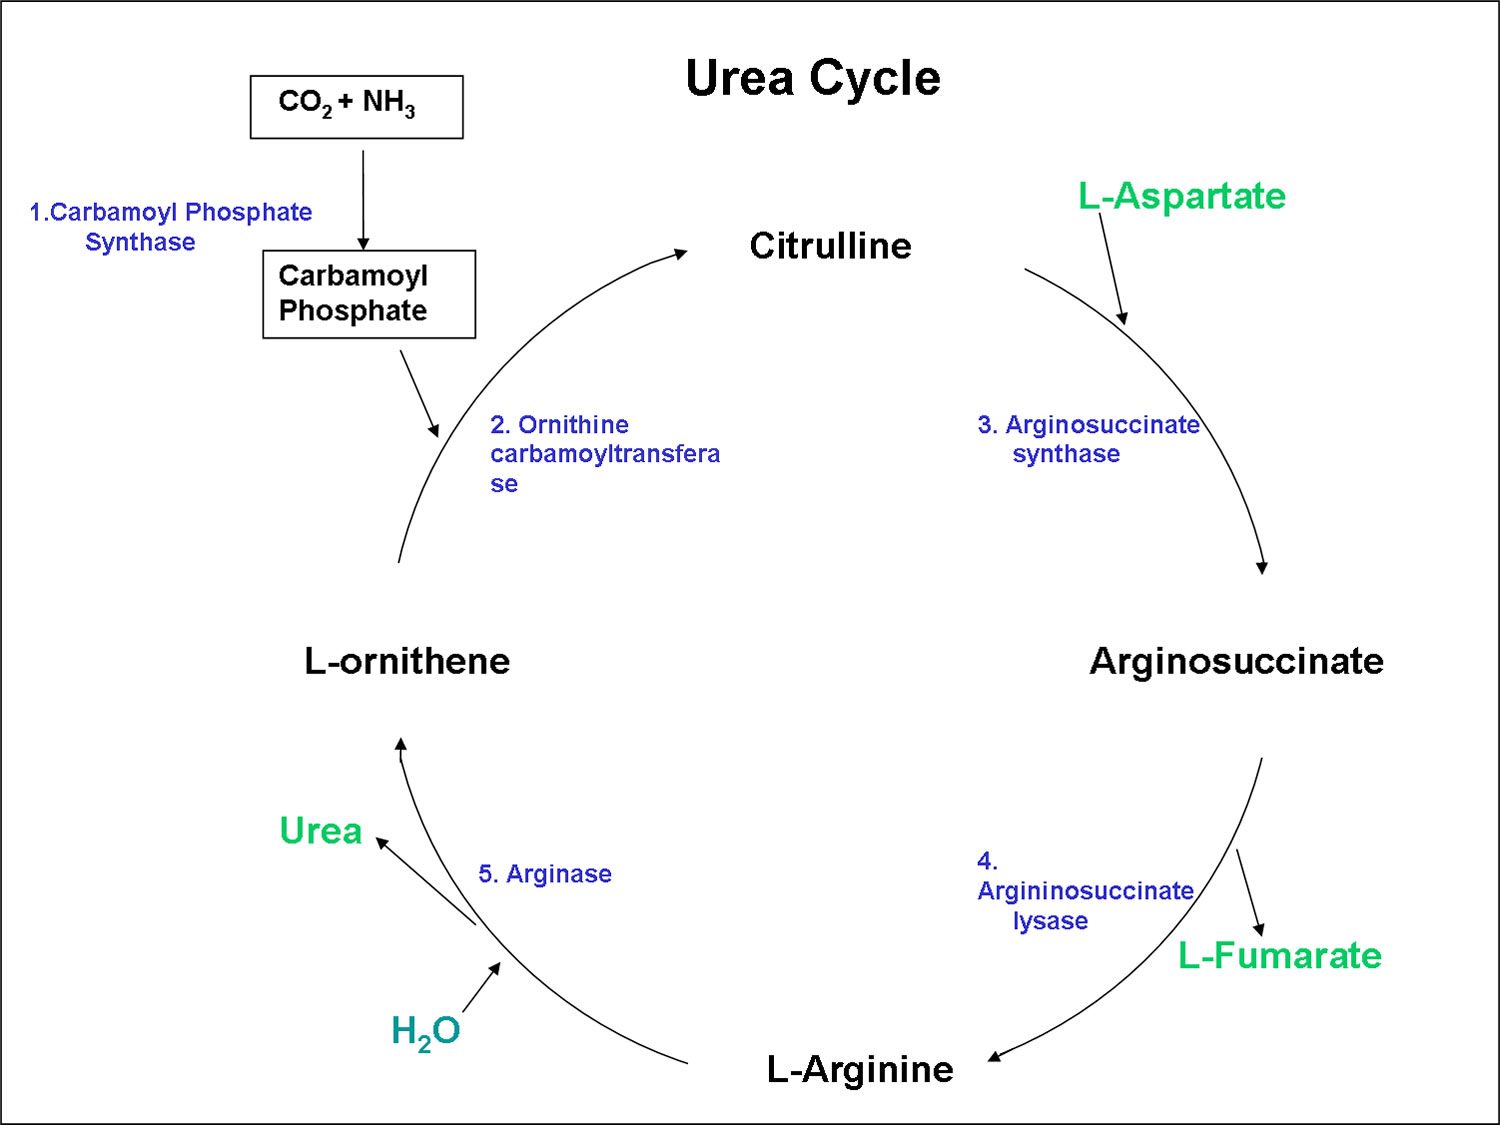 Urea cycle